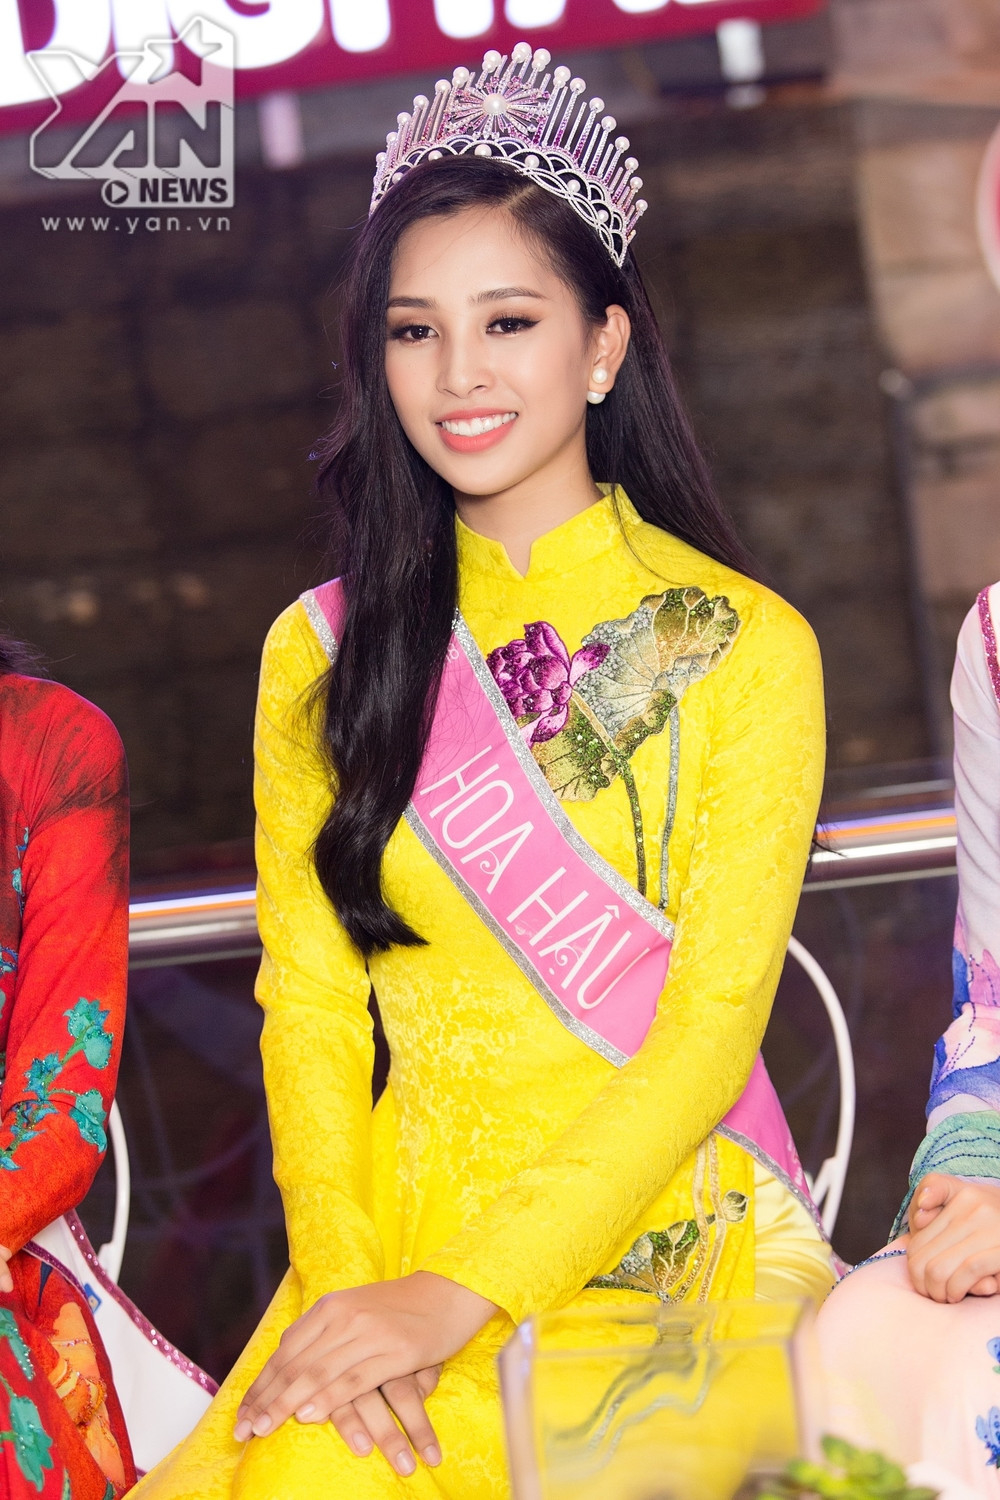 
Sau khi đăng quang cuộc thi Hoa hậu Việt Nam, Trần Tiểu Vy được nhiều khán giả dành lời khen. Hình ảnh của người đẹp cũng xuất hiện trên nhiều trang báo quốc tế. 